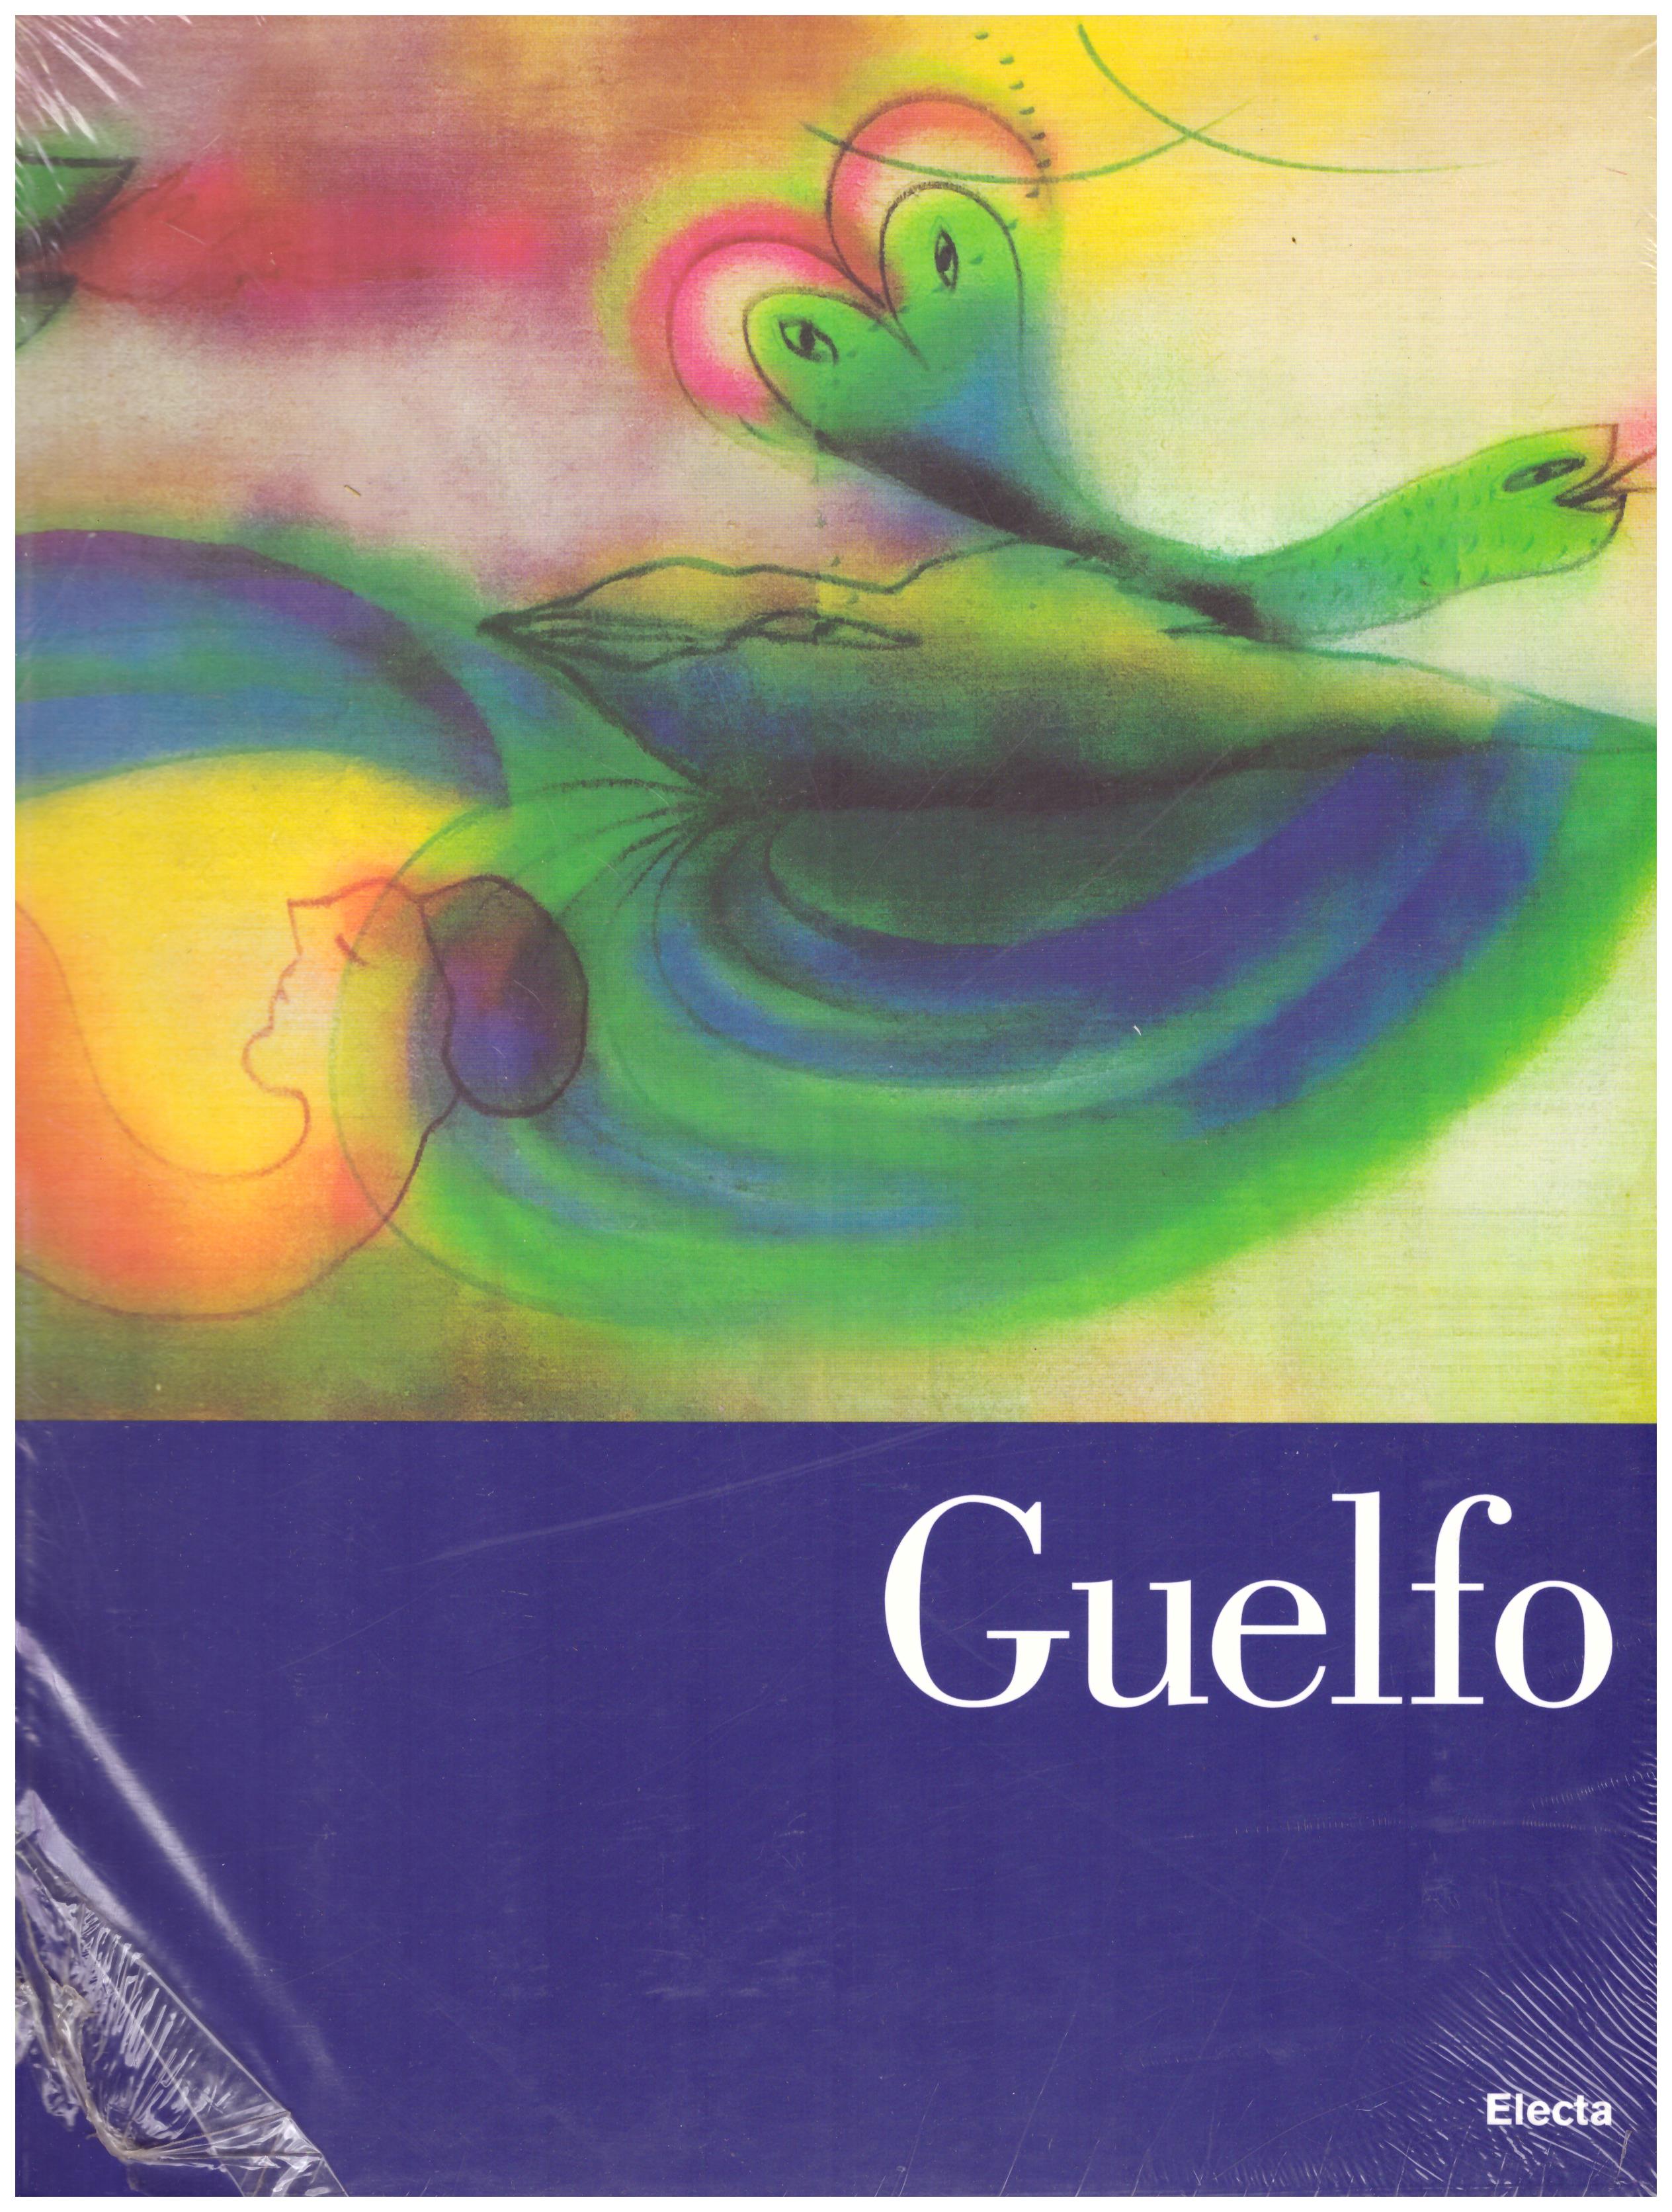 Titolo: Guelfo Autore: AA.VV.  Editore: Electa, 2007